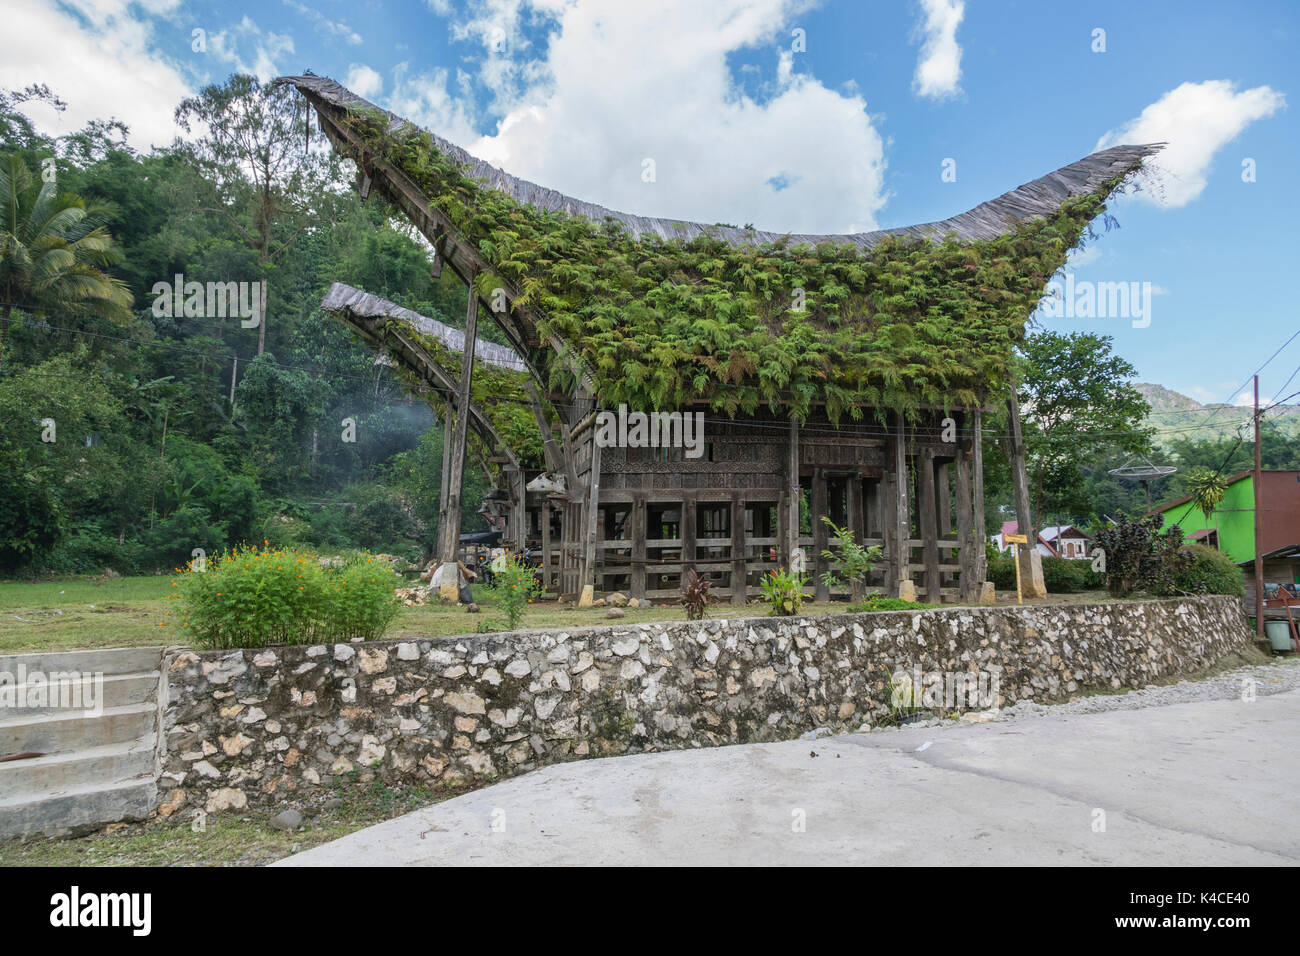 Maison en bois indonésien avec toit à pignons, envahis par pkants, ciel bleu avec des nuages blancs Banque D'Images